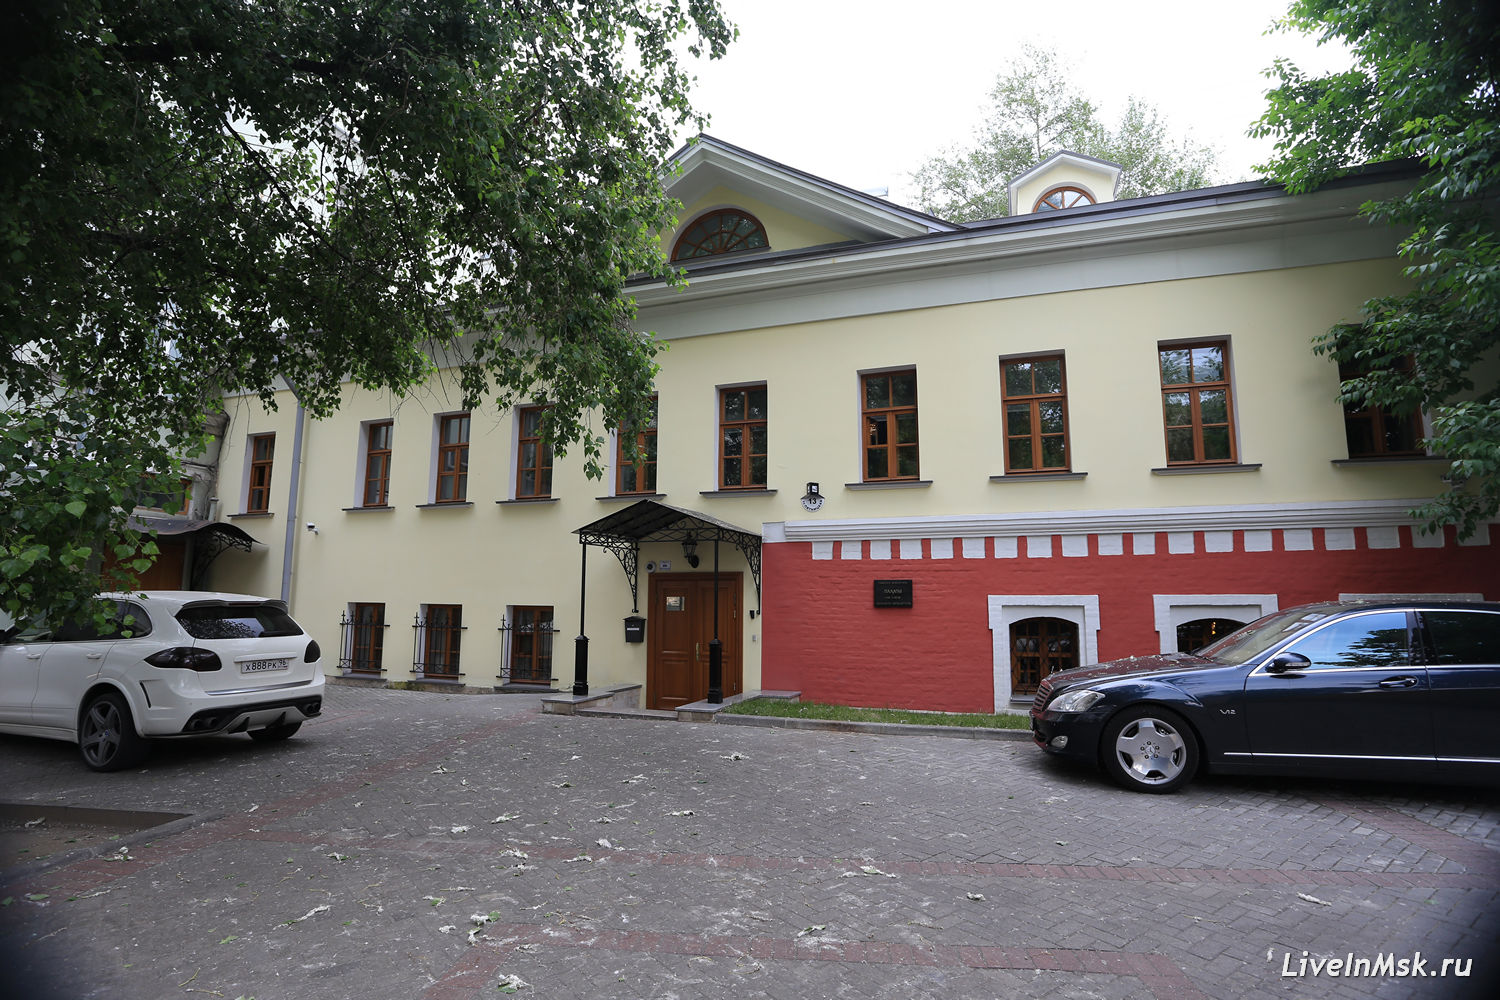 Палаты Петра Замятина, фото 2015 года